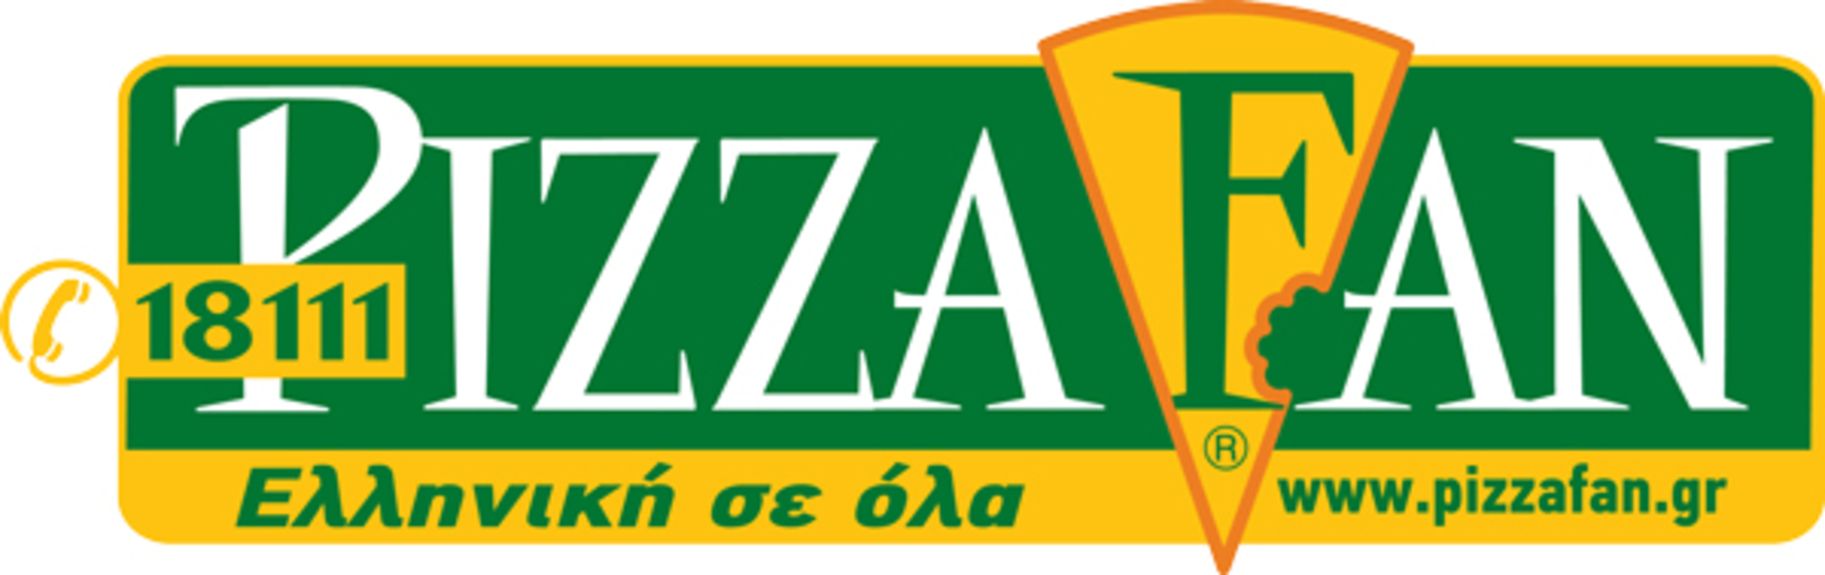 NEO-LOGOTYPO-PIZZA-FAN